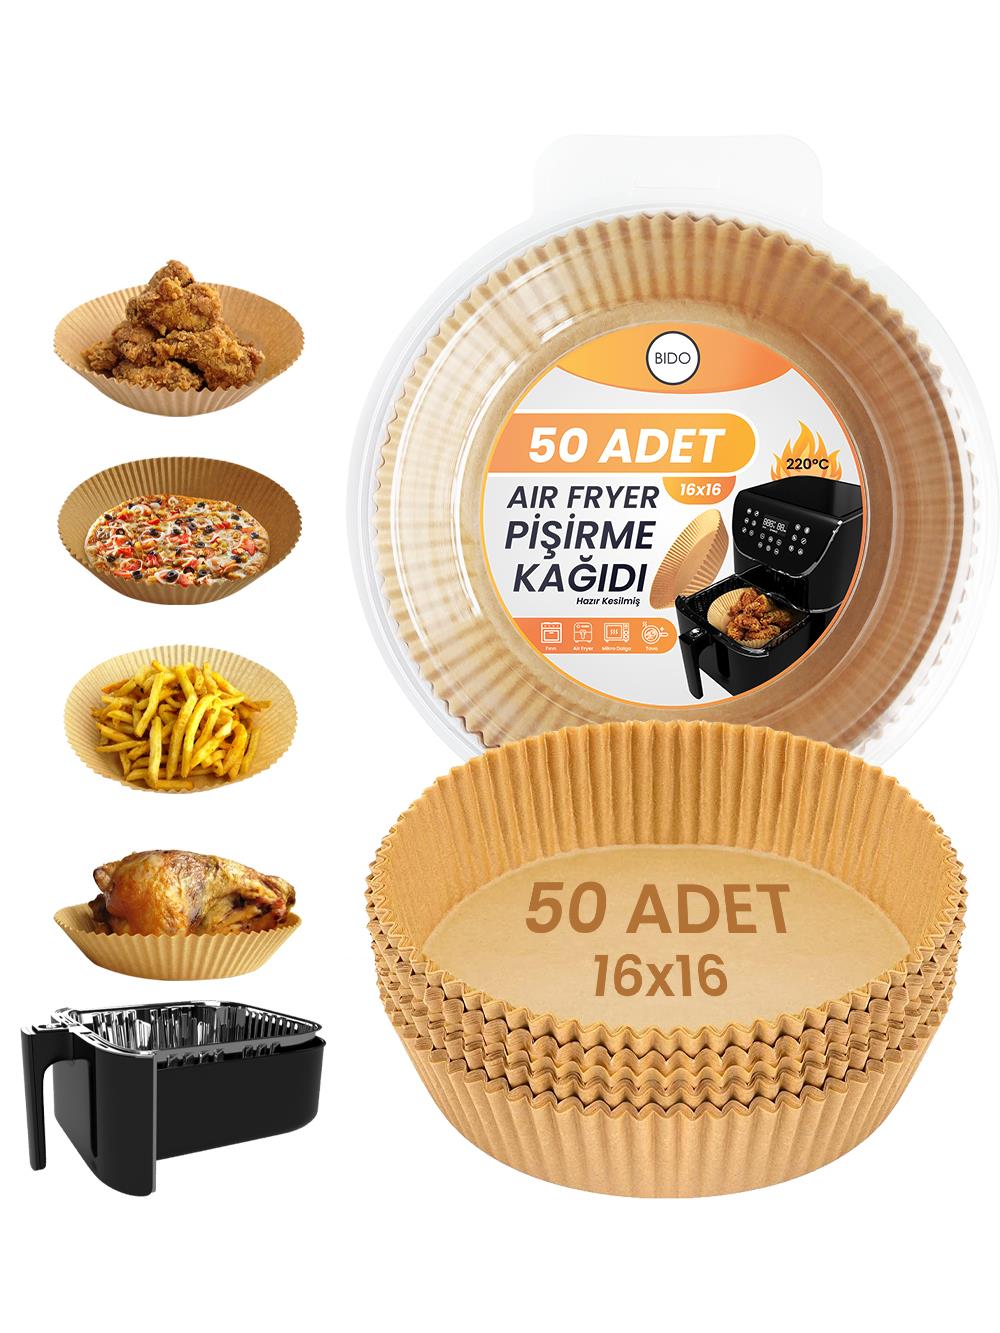 Air Fryer Pişirme Kağıdı 50 Adet Hava Fritözü,Yuvarlak Model Pişirme Kağıdı  Airfryer Yağsız Firitöz